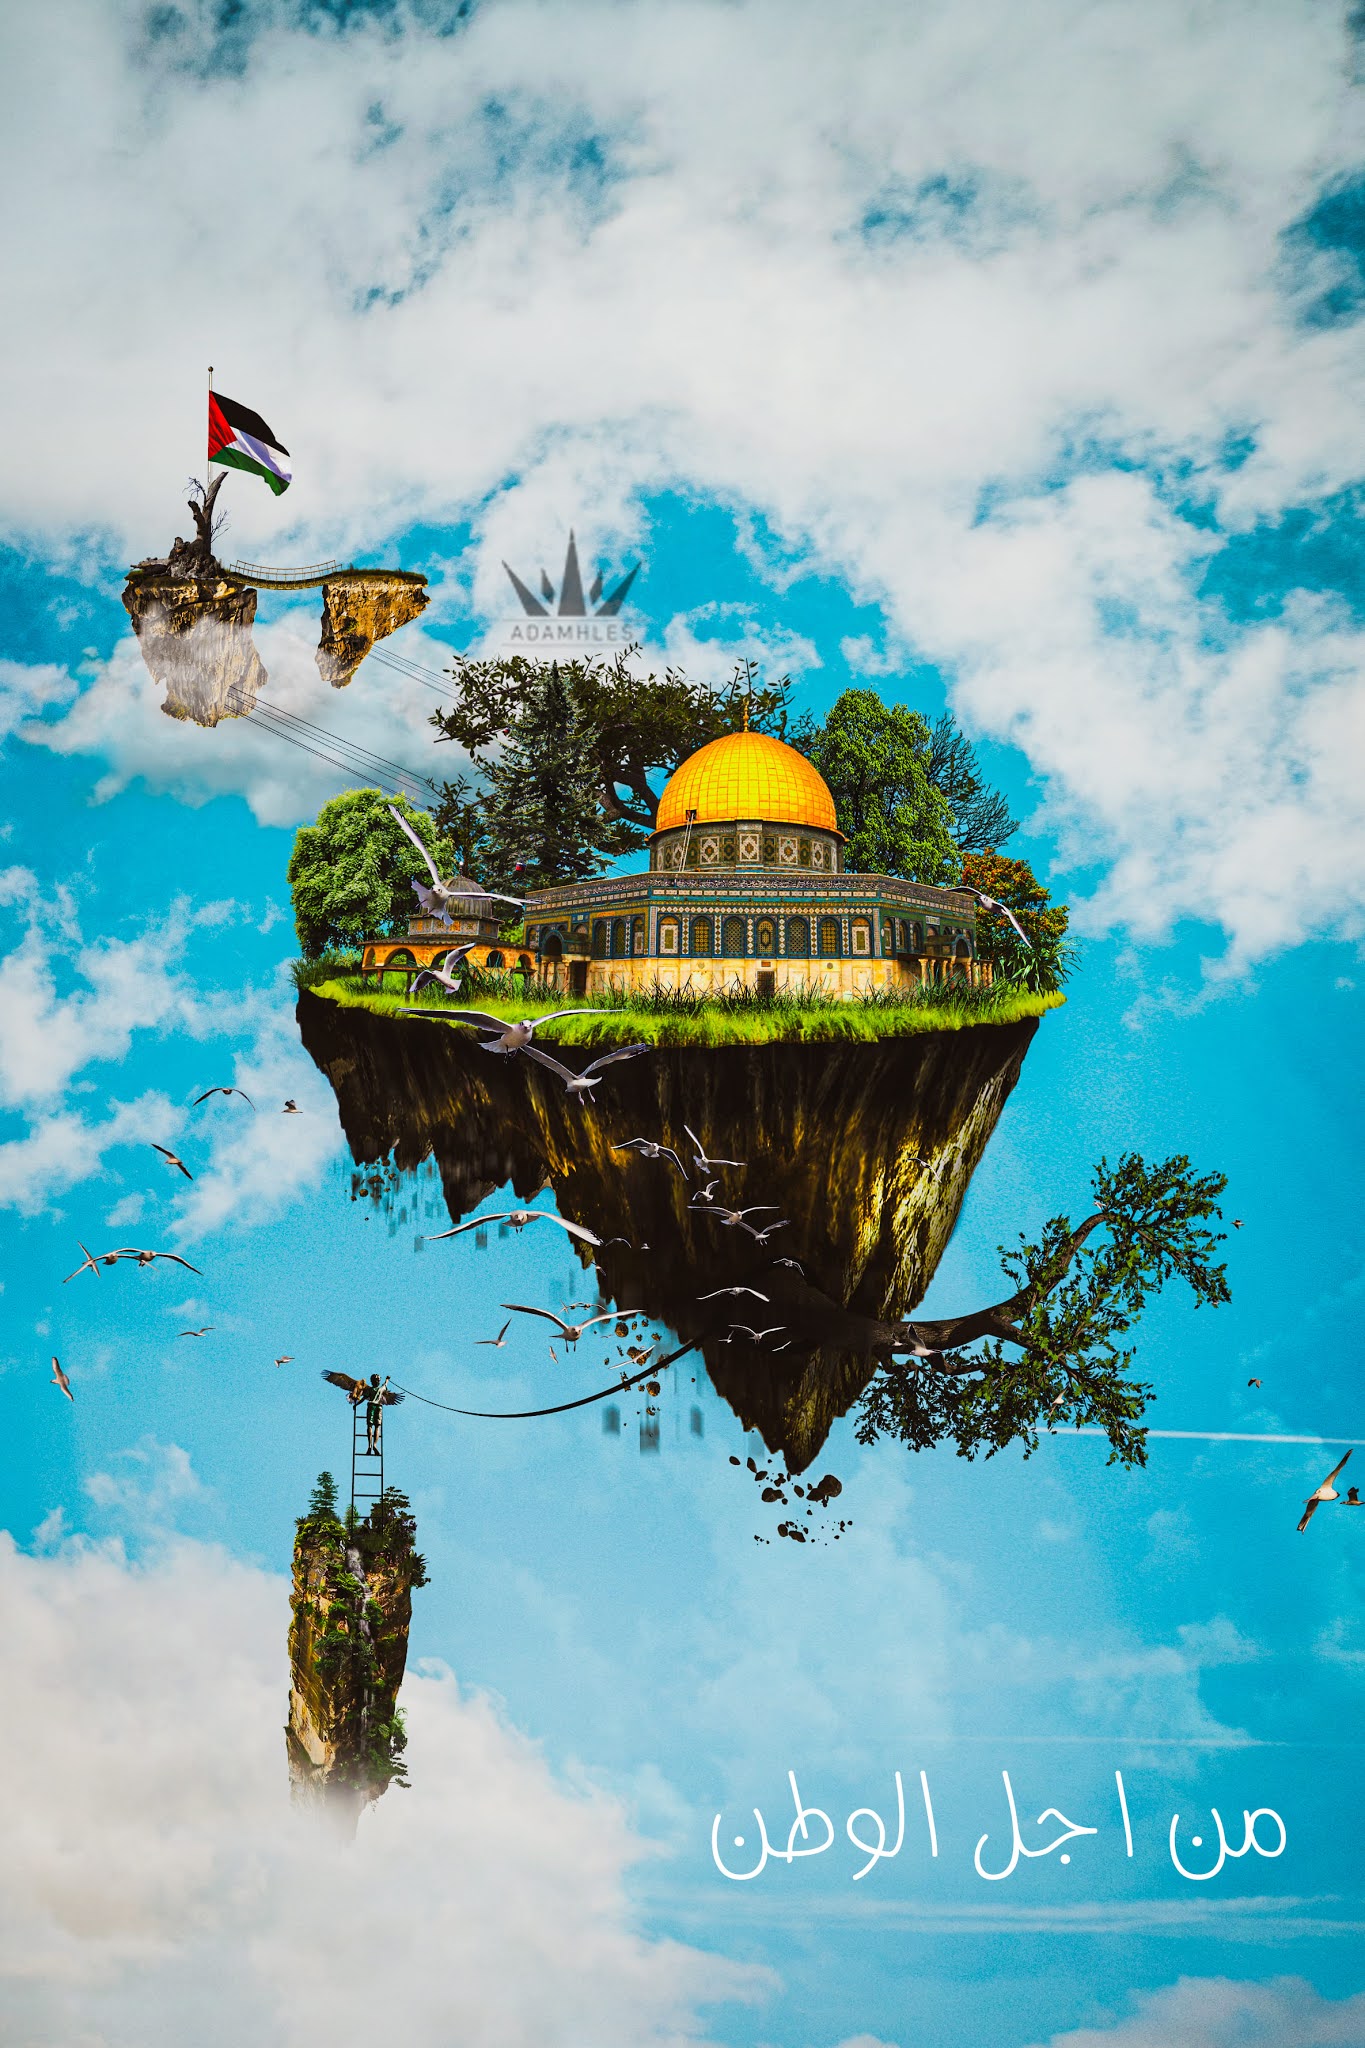 تصميم جديد للقدس اجمل خلفيات هاتف خيالية القدس بدقة عالية من اجل الوطن